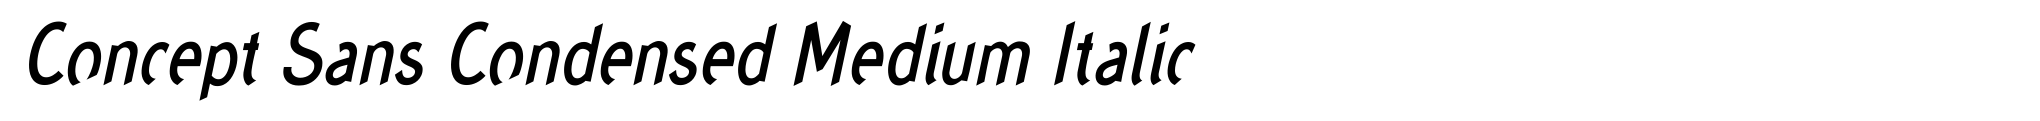 Concept Sans Condensed Medium Italic image